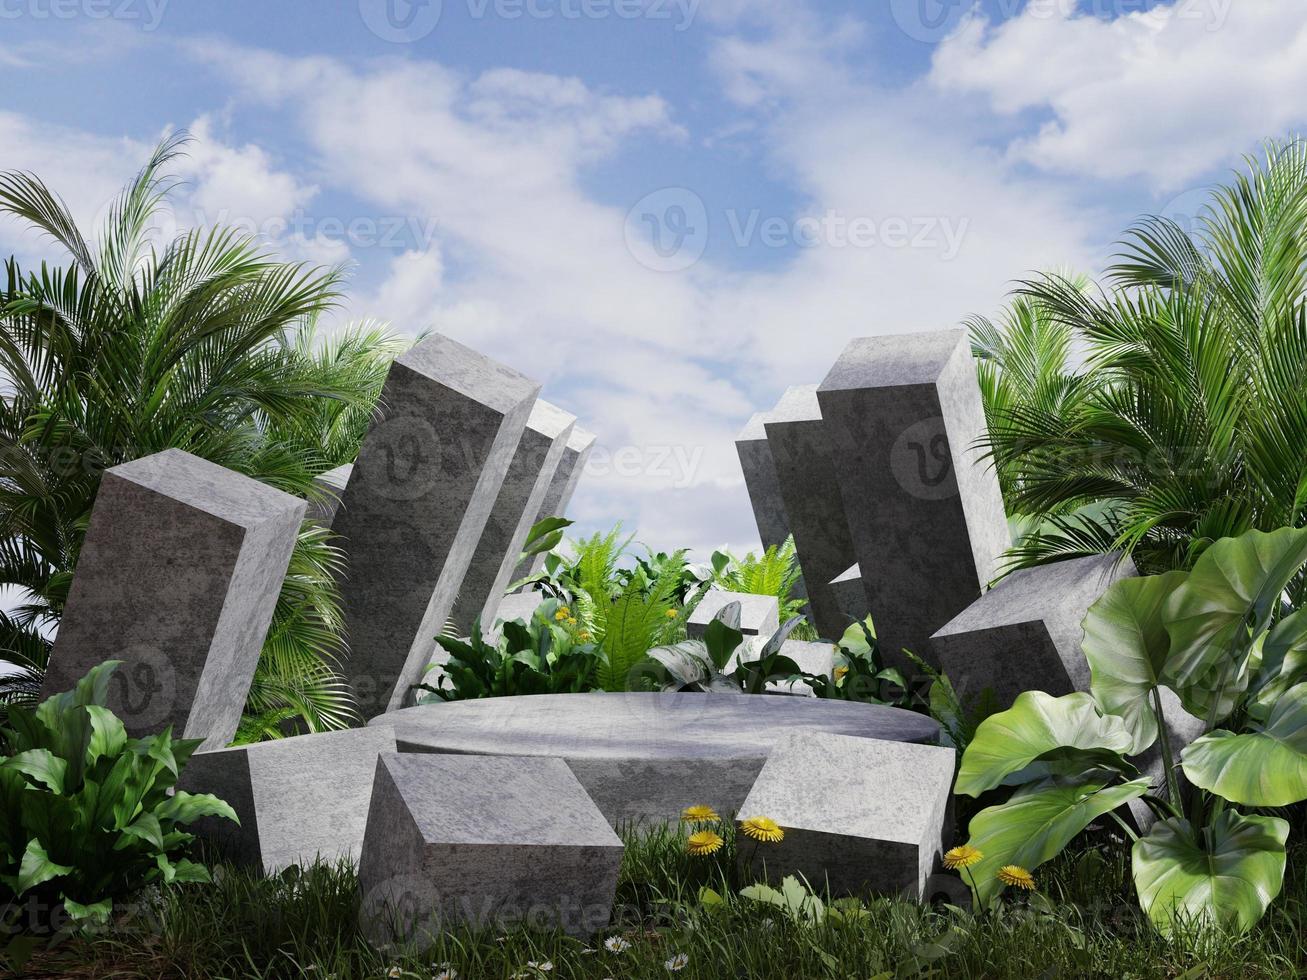 el podio de hormigón en el bosque tropical para la presentación del producto detrás es una vista del cubo de hormigón. representación de ilustración 3d foto